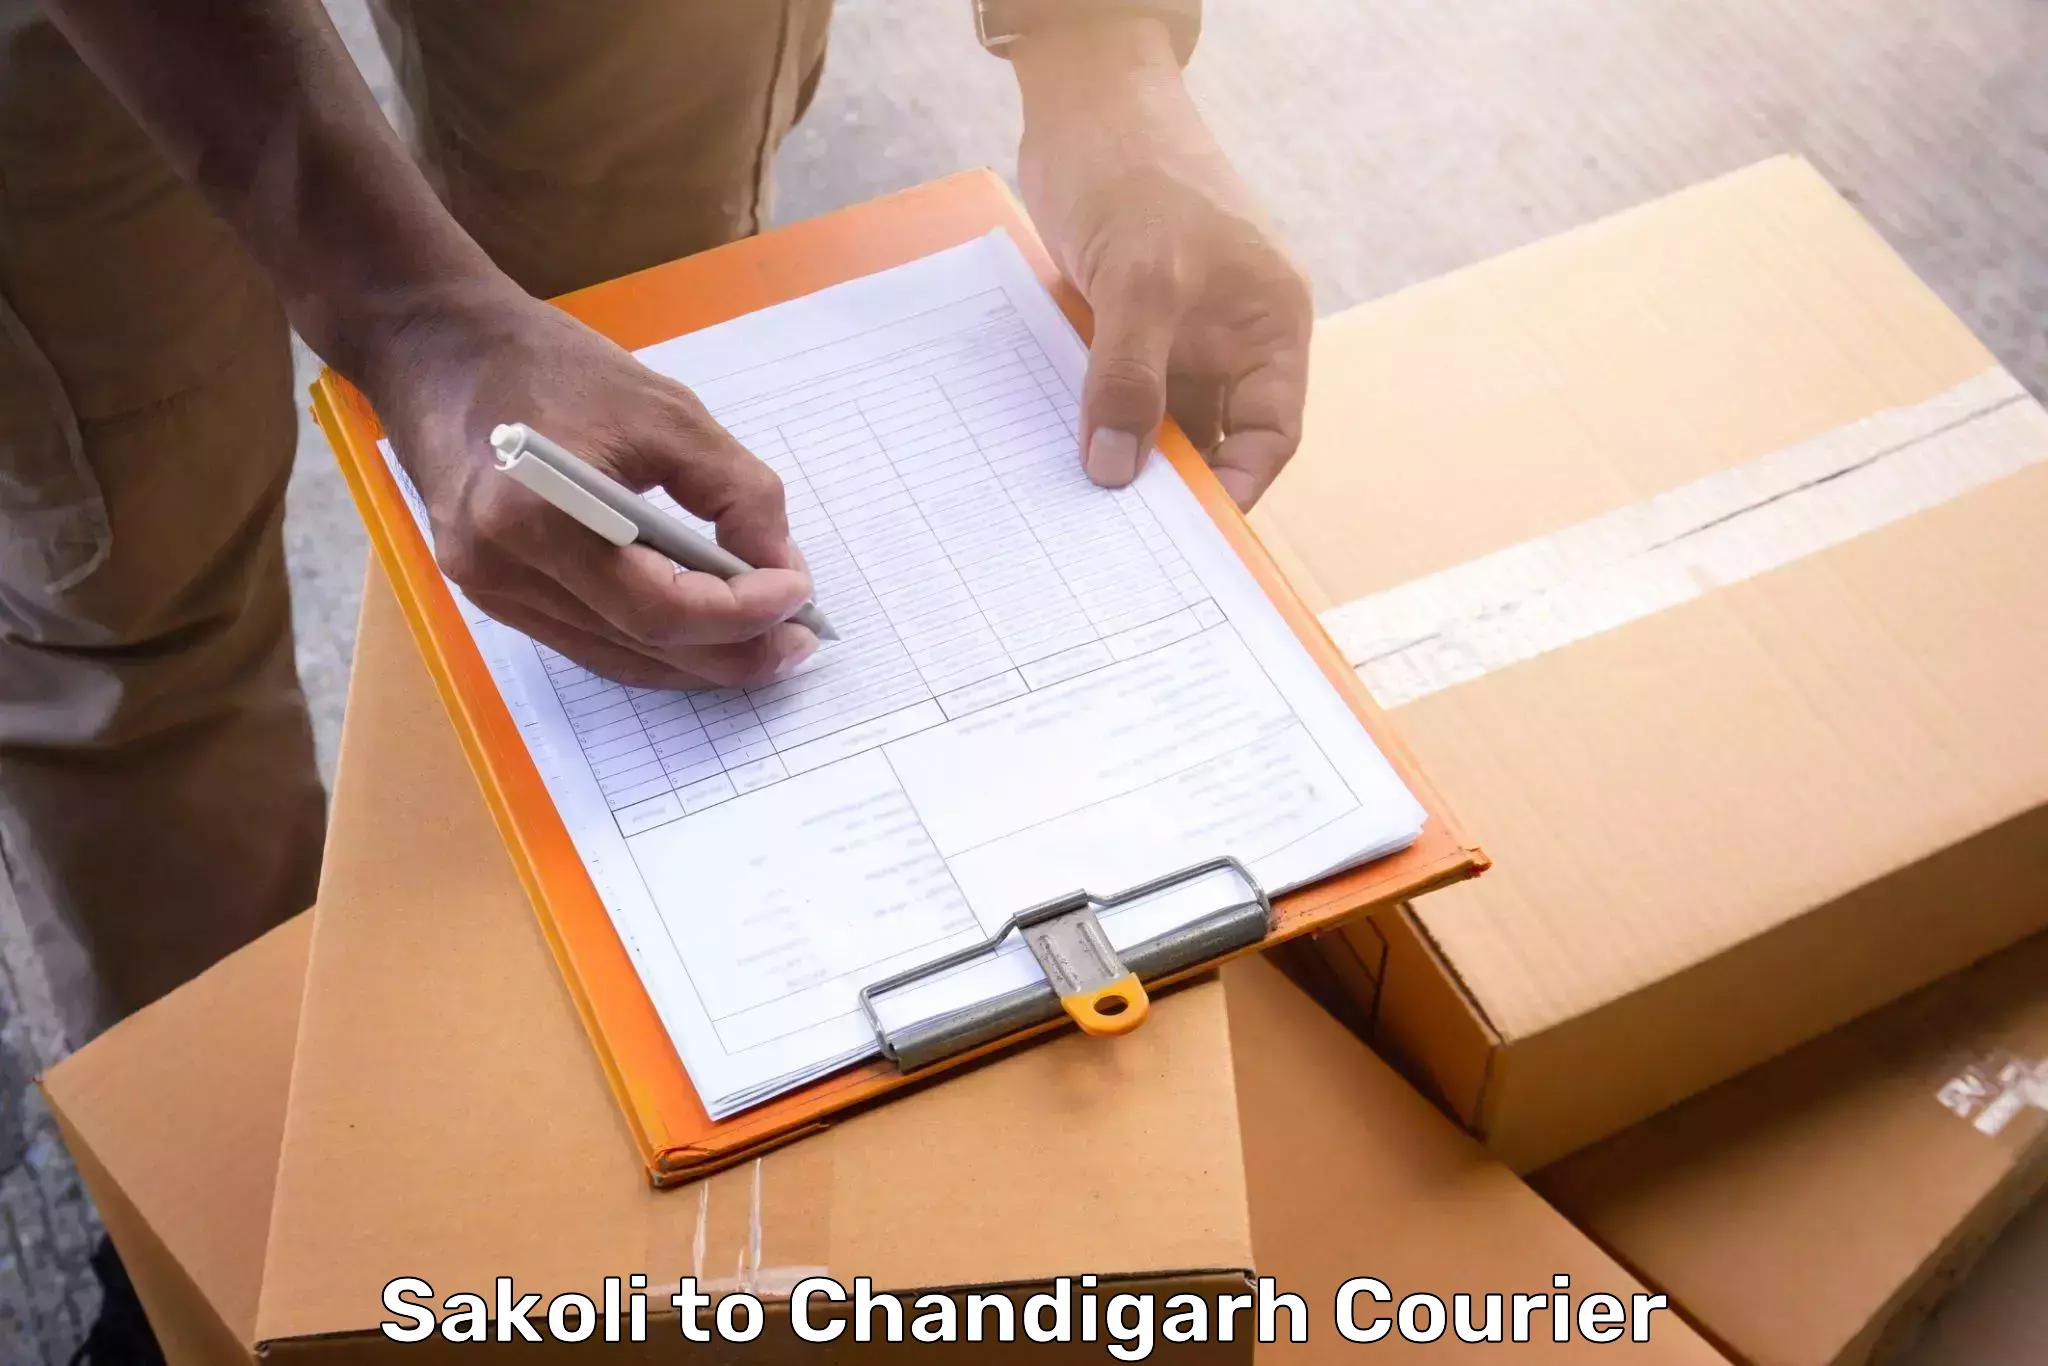 Luggage dispatch service Sakoli to Panjab University Chandigarh